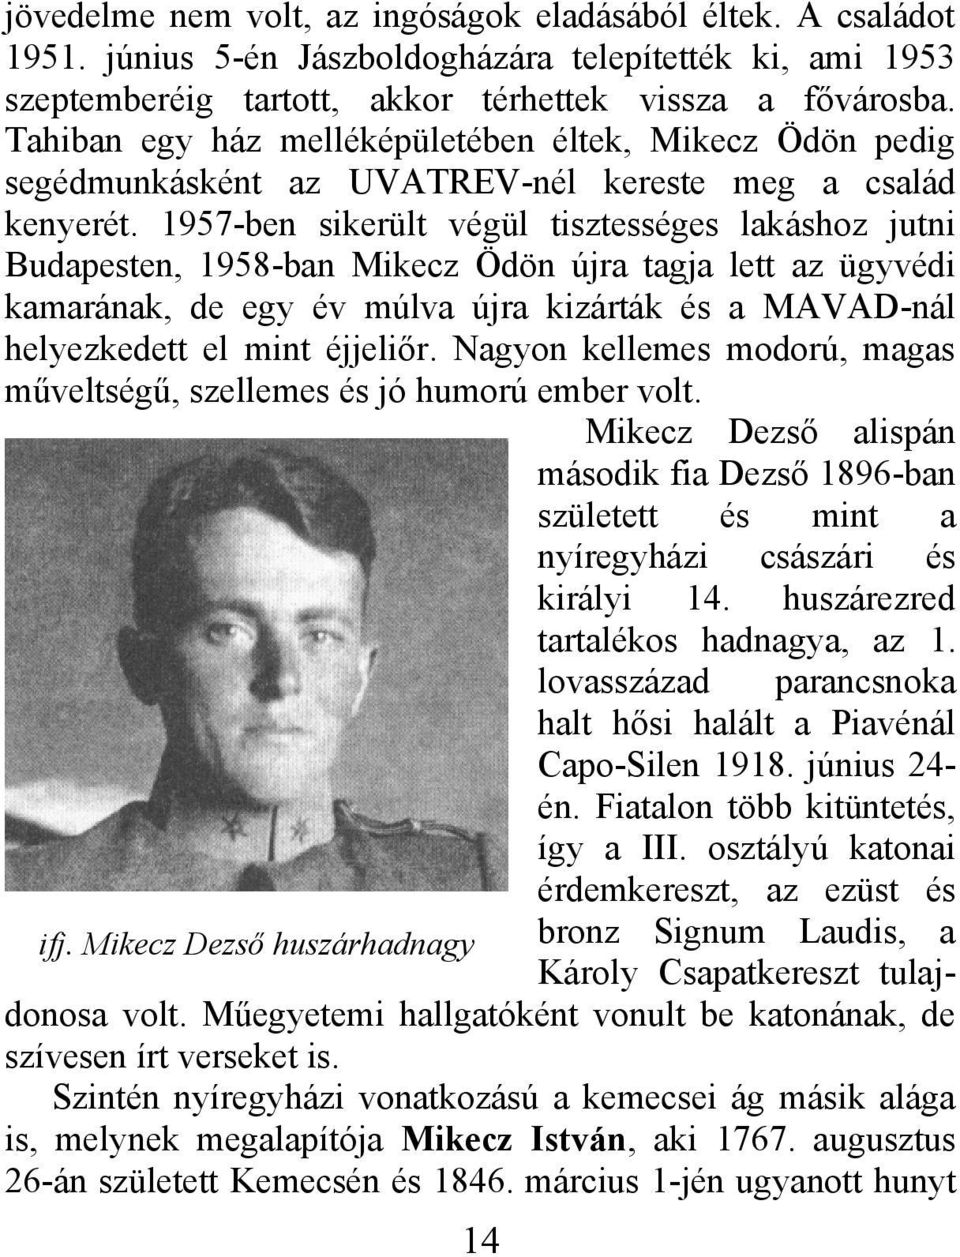 1957-ben sikerült végül tisztességes lakáshoz jutni Budapesten, 1958-ban Mikecz Ödön újra tagja lett az ügyvédi kamarának, de egy év múlva újra kizárták és a MAVAD-nál helyezkedett el mint éjjeliőr.